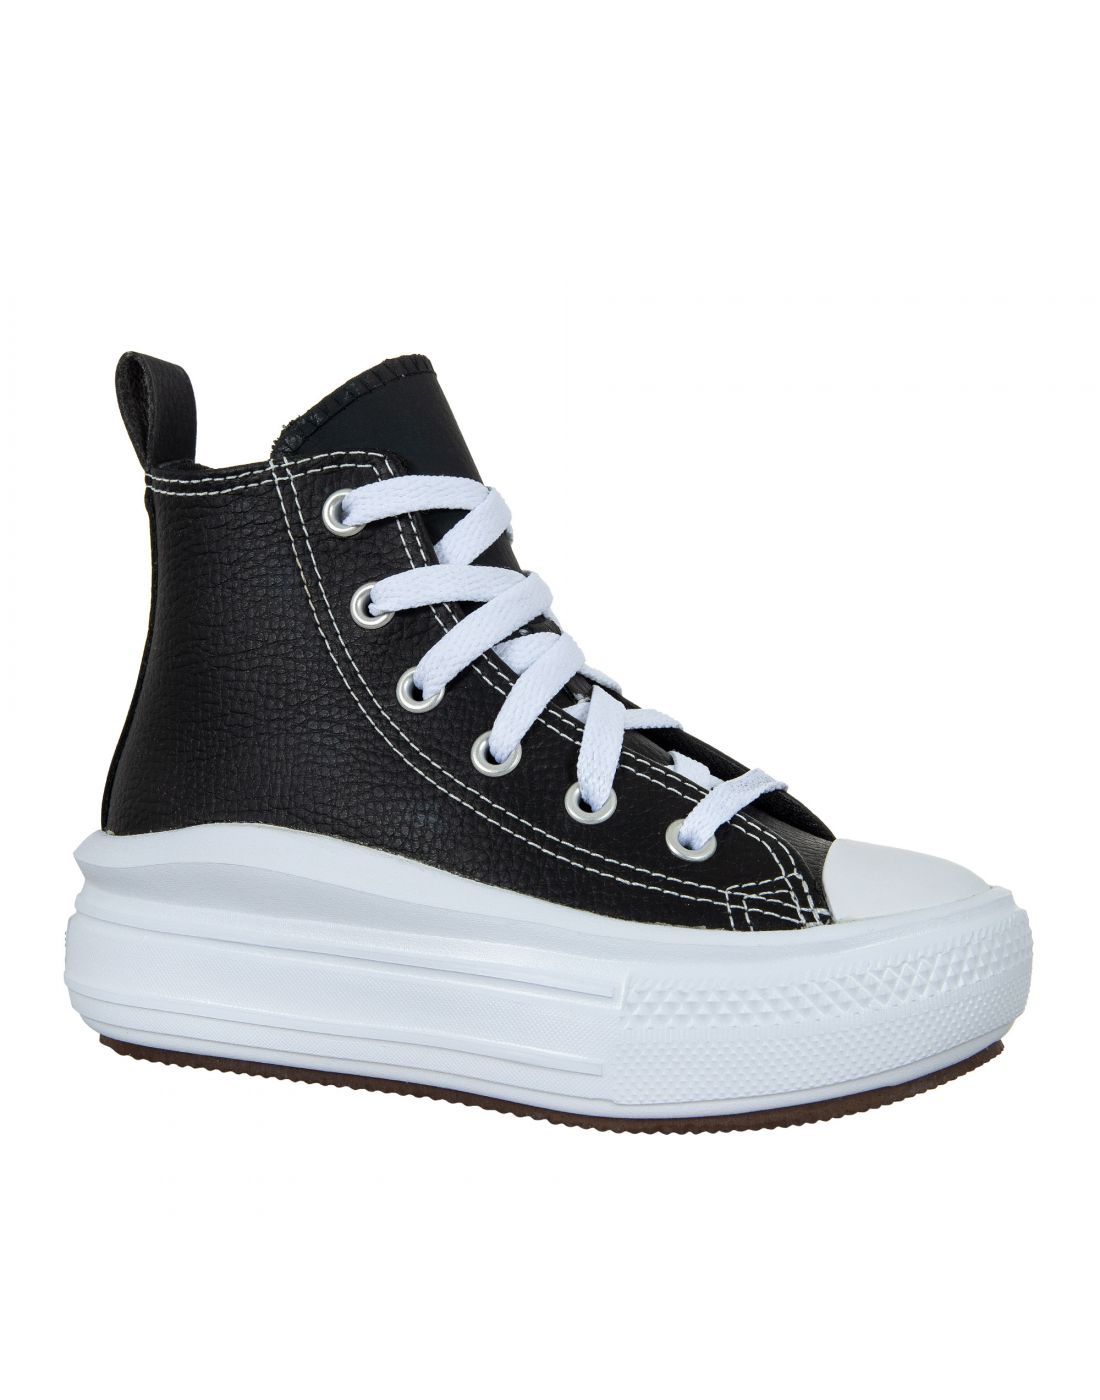 Παιδικά Παπούτσια Sneakers All Star, Converse, 23270395 | LapinKids.com |  LAPIN KIDS